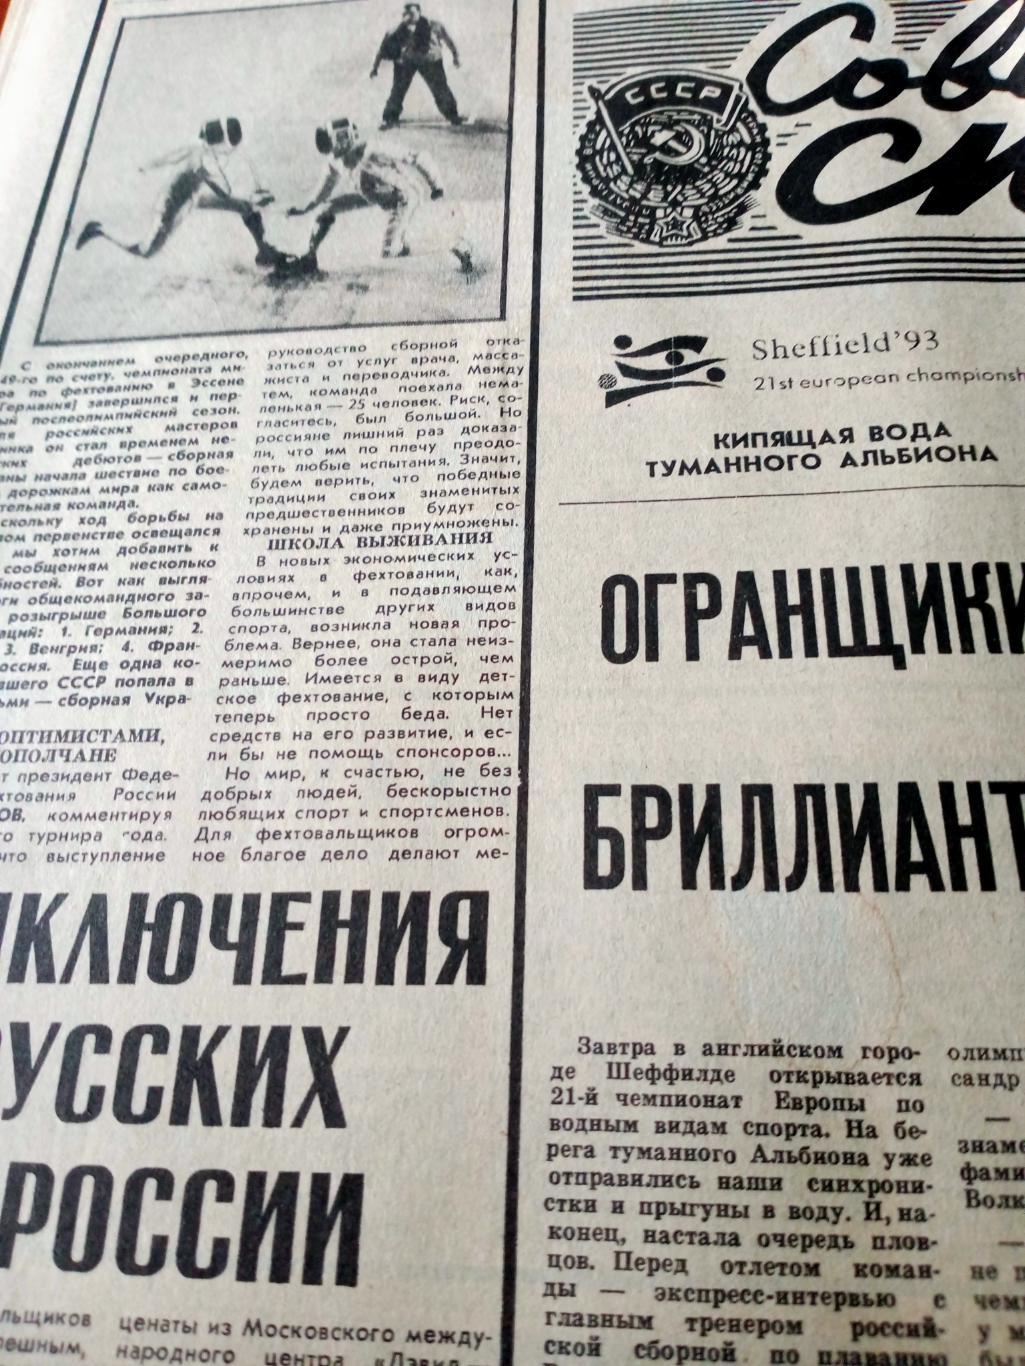 Откровенно. С.Ольшанский. Советский спорт. 1993 год. 29 июля